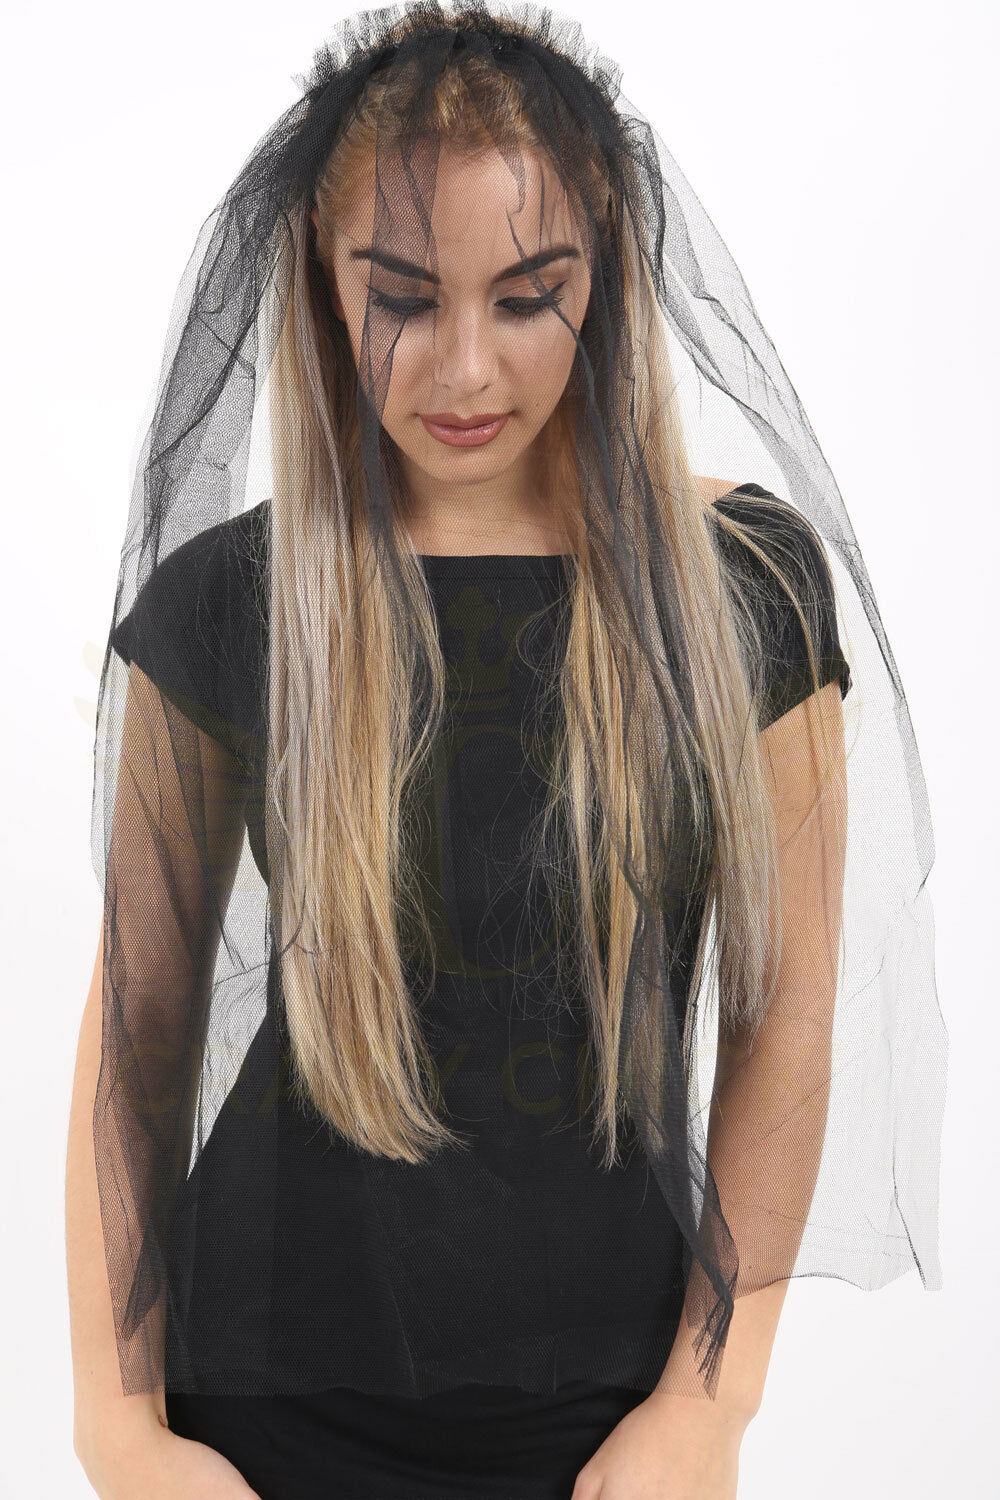 Bride Veil